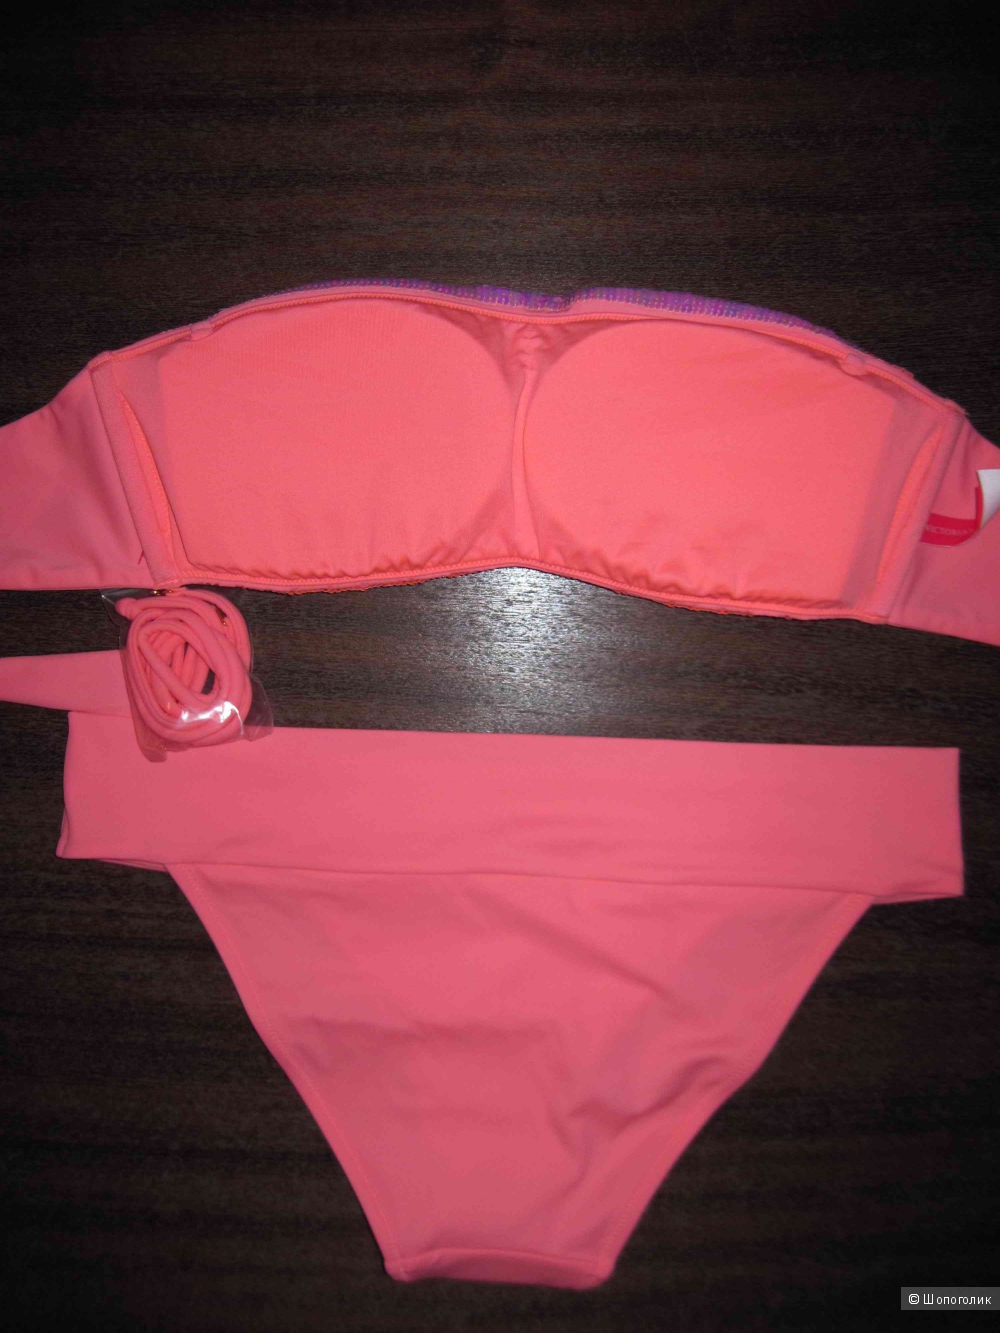 Новый купальник бандо Victoria's Secret оригинал розовый в пайетках р.М, 1200 грн